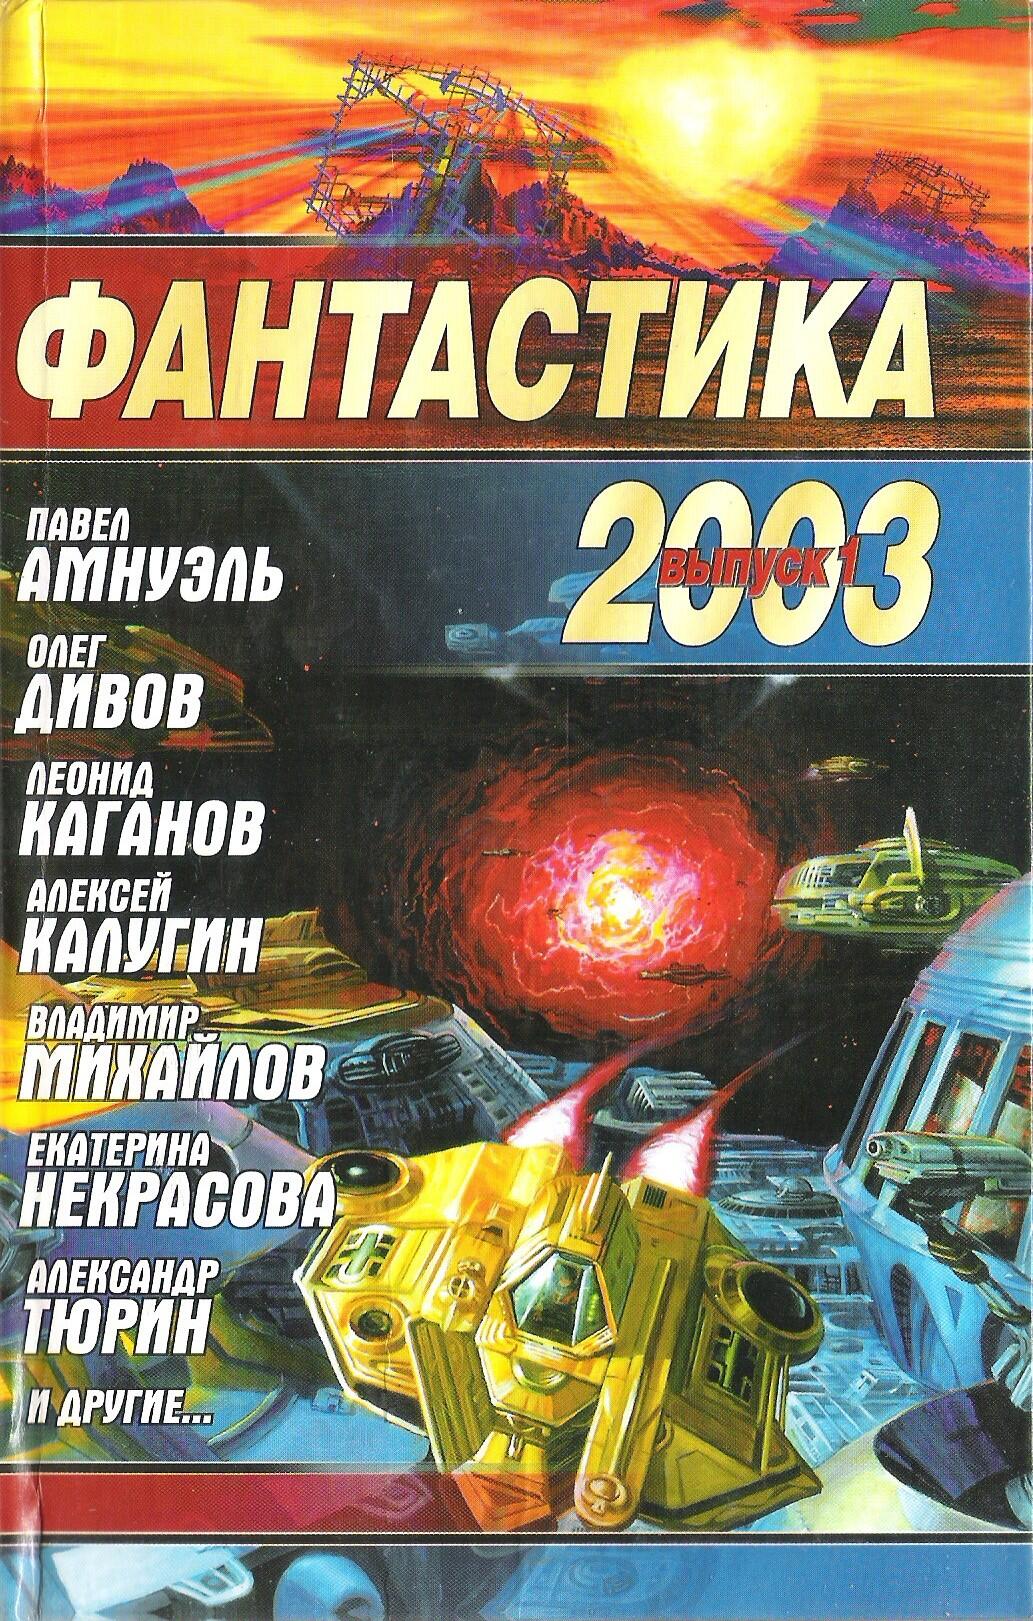 Фантастика 2003 Выпуск 1 - фото 3